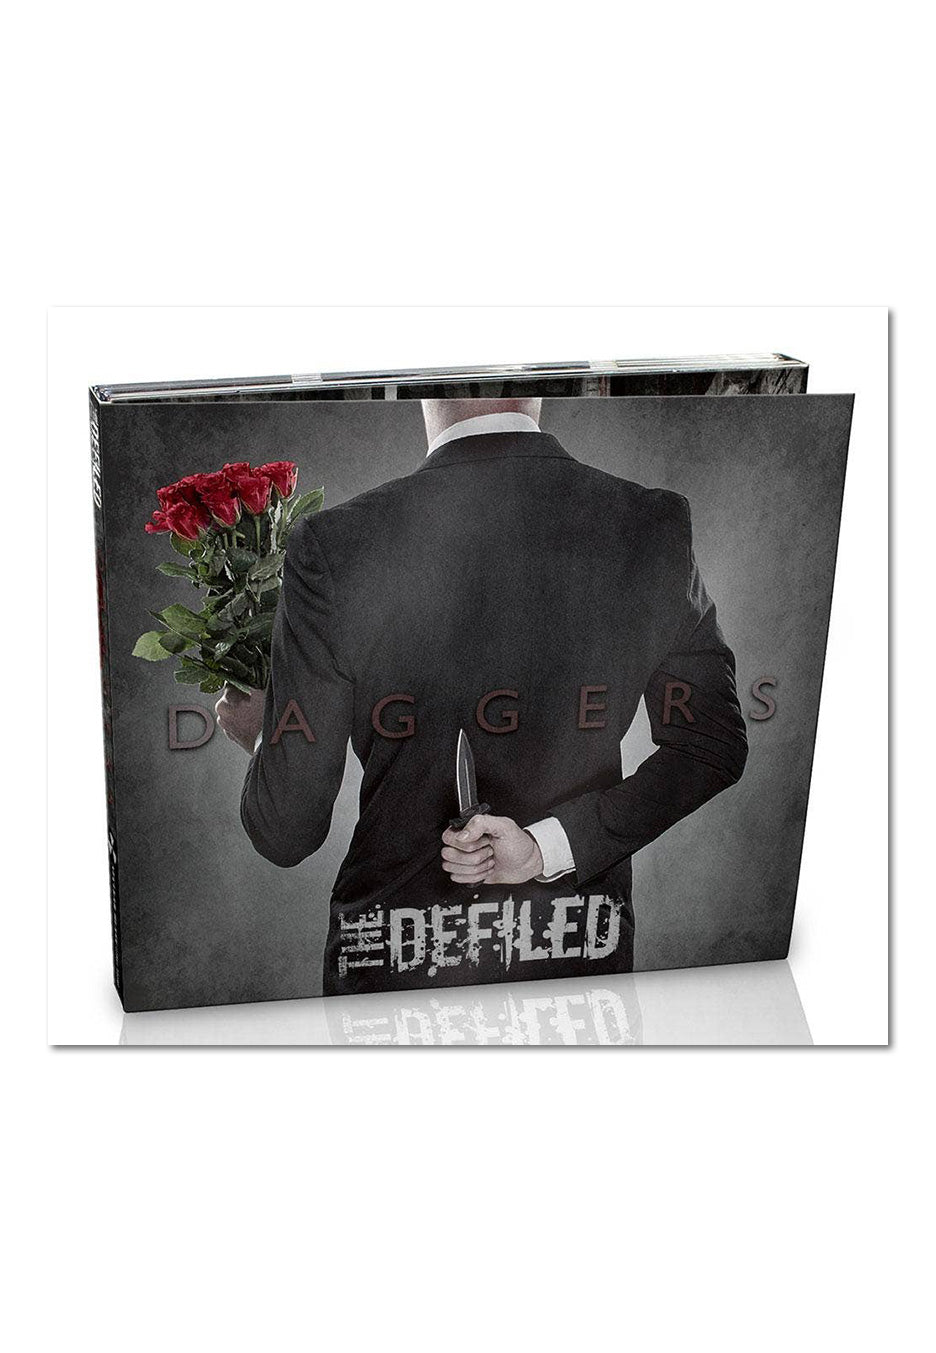 The Defiled - Daggers - Digipak CD